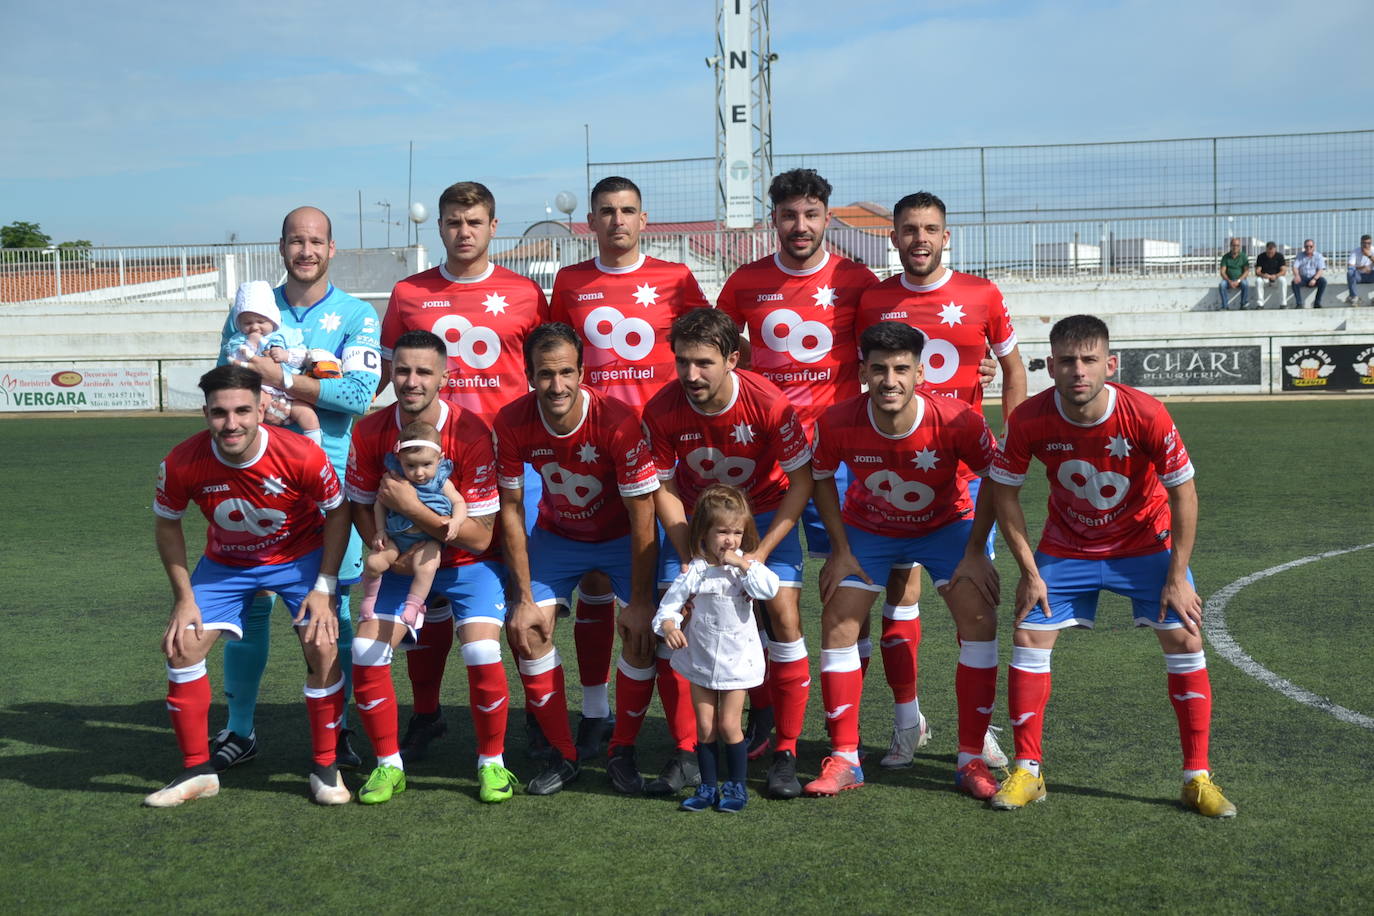 La Estrella ganó 2-0 al San Serván con extraordinarios goles de los maestros Mark y Manu